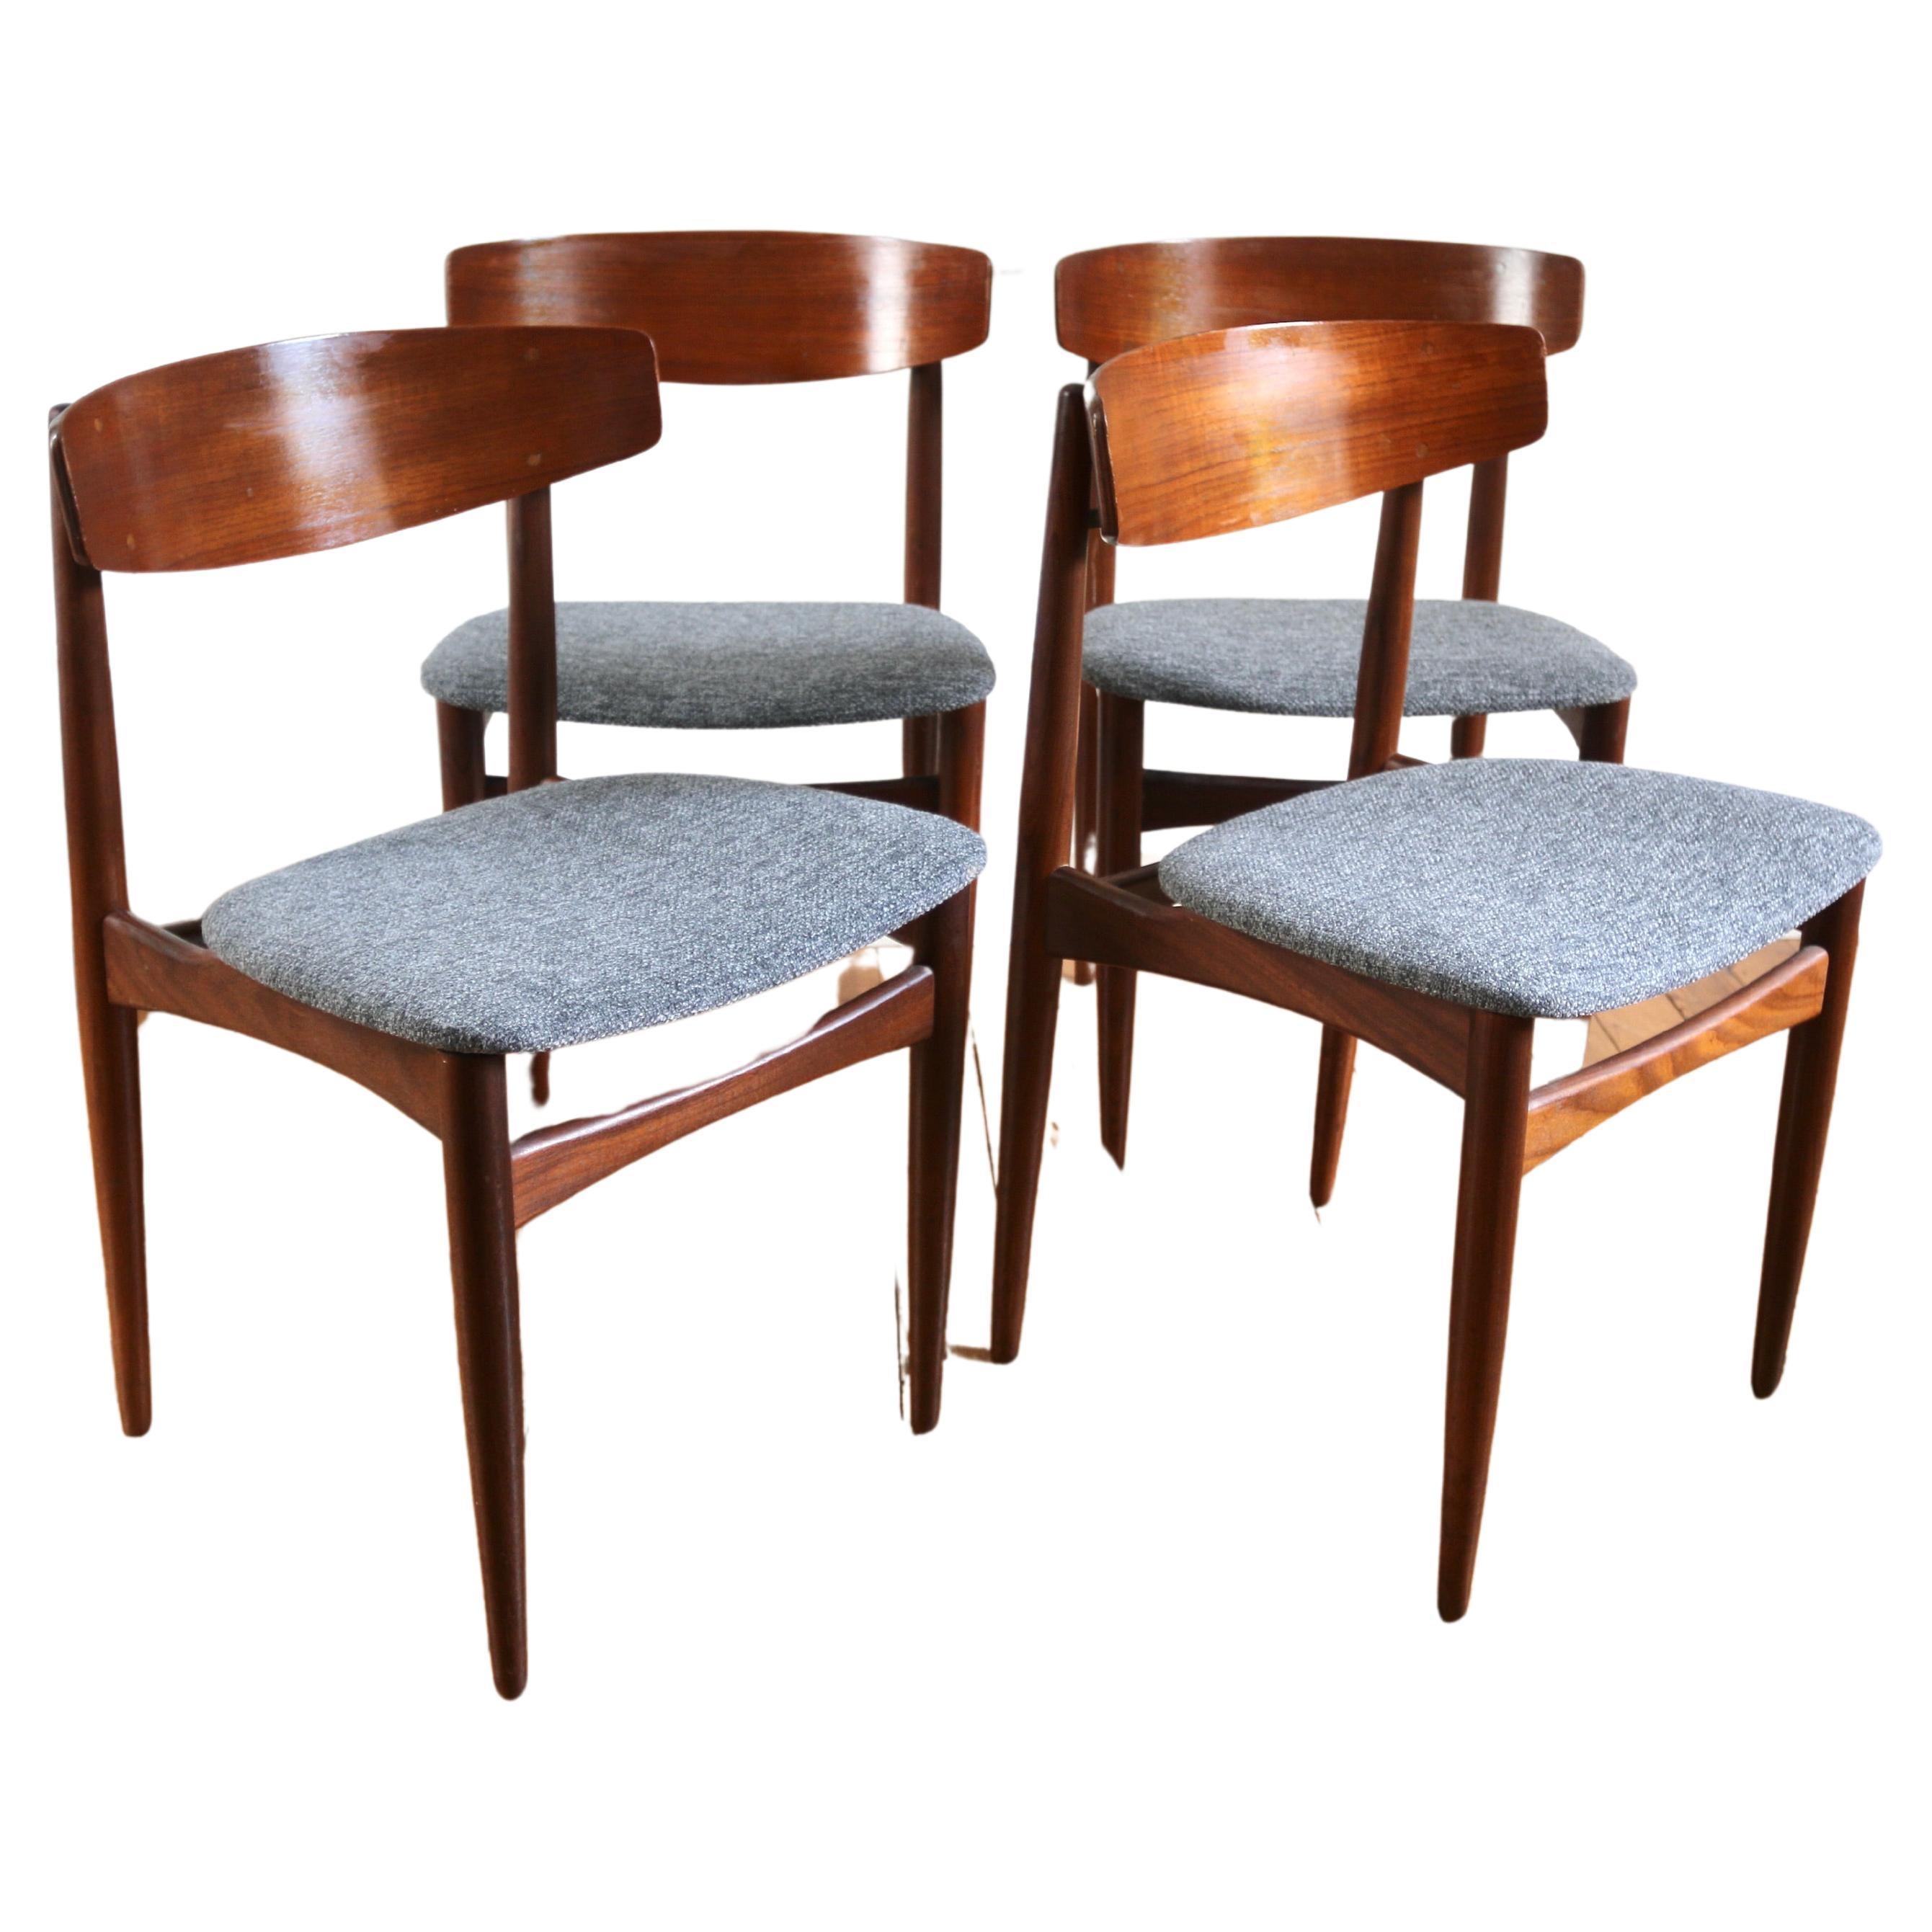 H.W. Klein Chairs